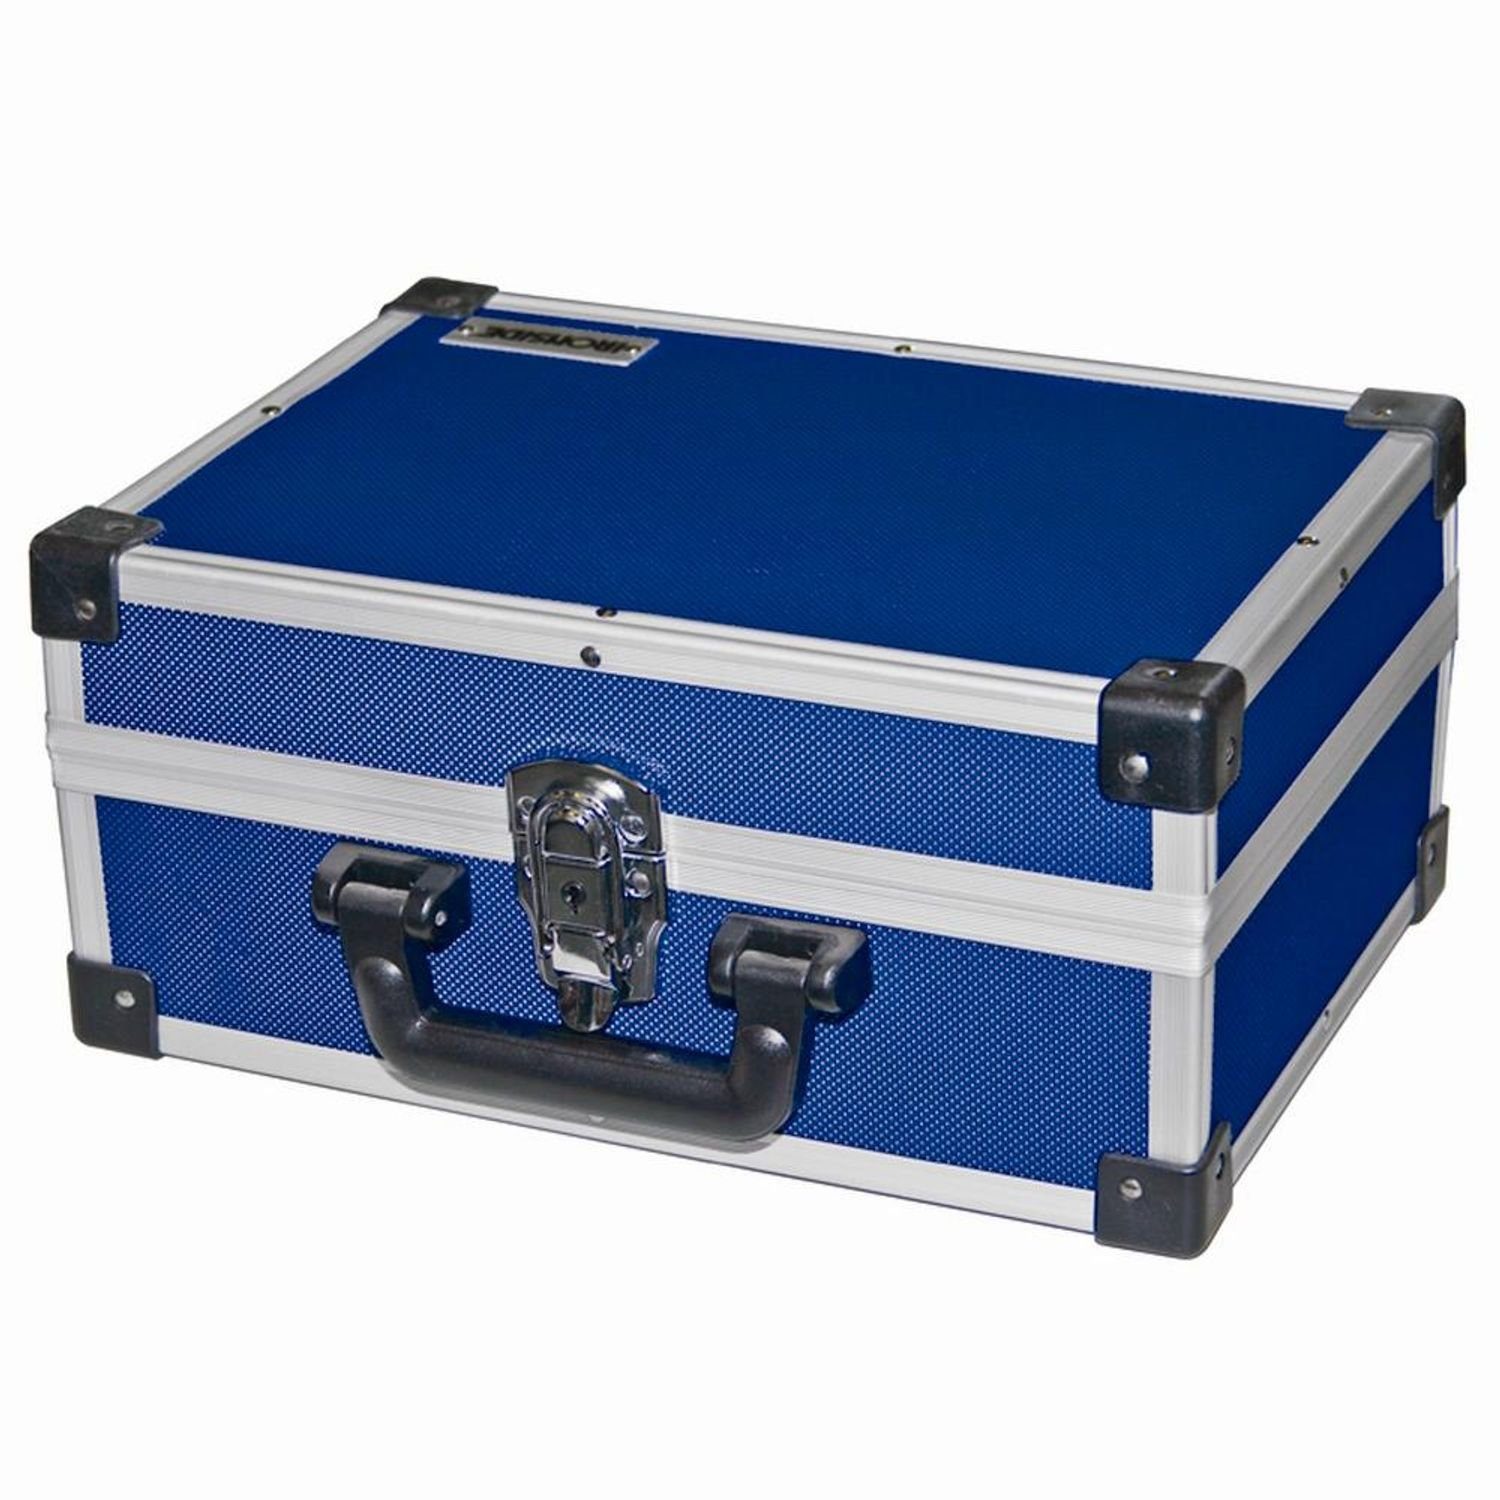 IRONSIDE Werkzeugkoffer Alu blau Wer Werkzeugkiste Werkzeugkasten Werkzeugkoffer 330x230x150mm